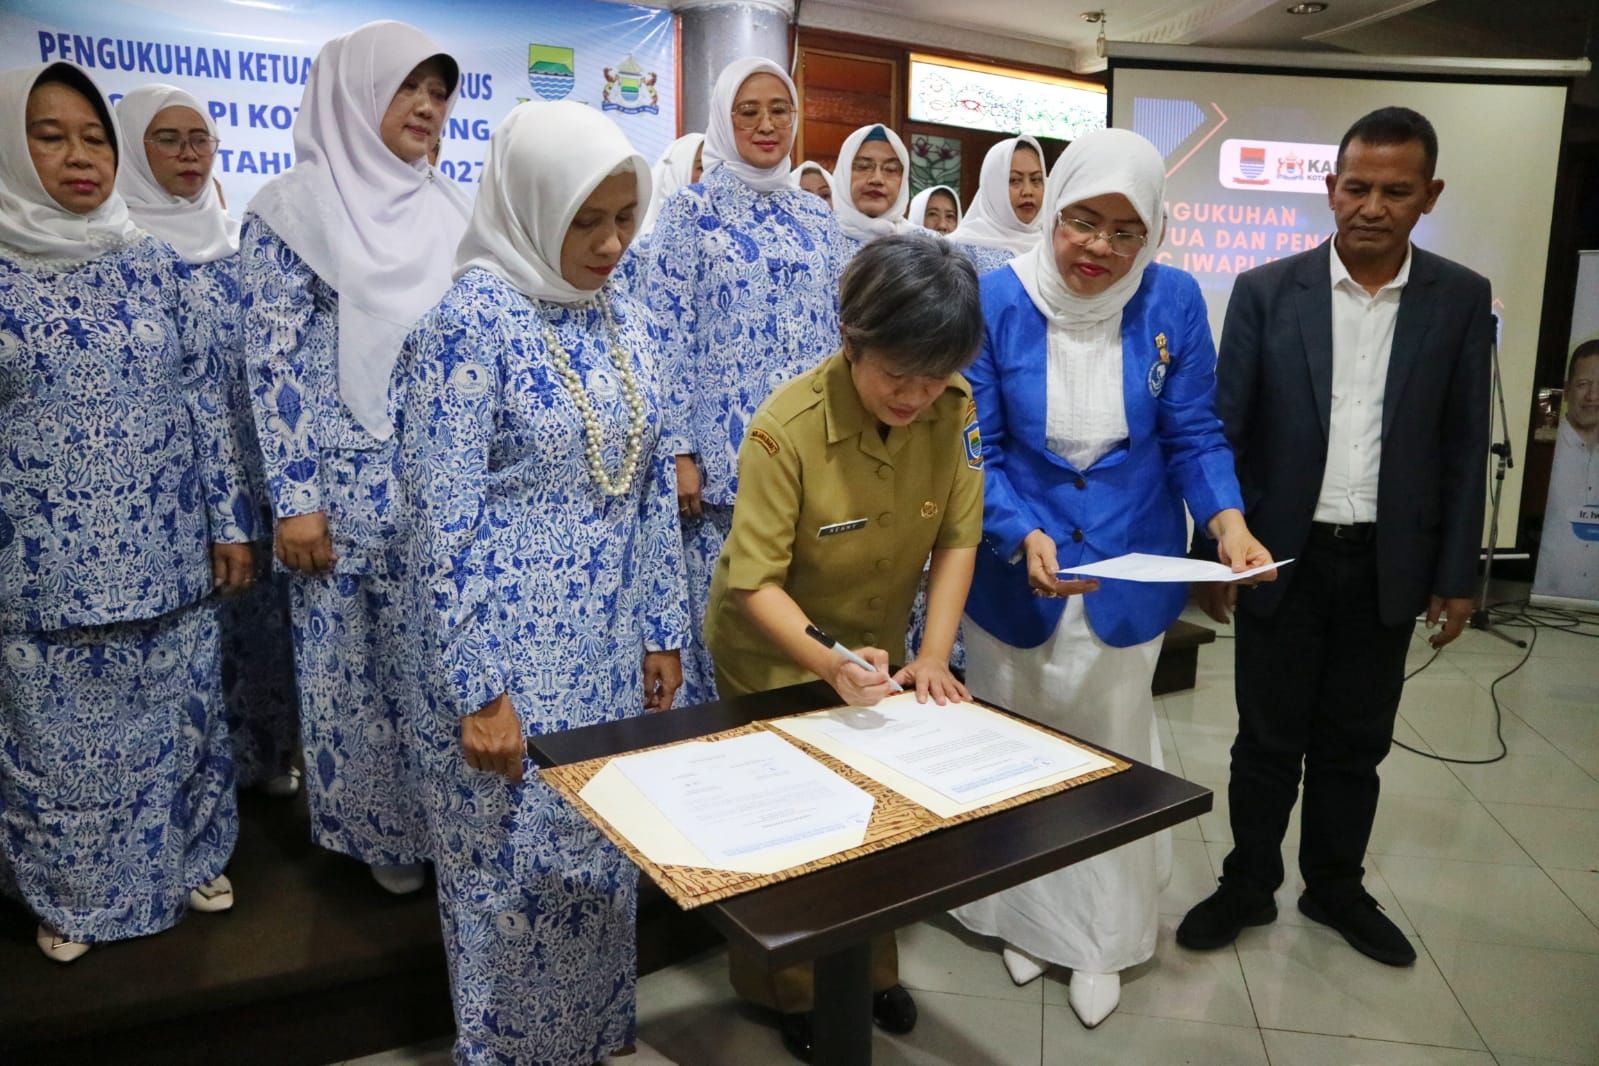 Pengukuhan Pengurus DPC IWAPI Kota Bandung di KADIN Kota Bandung, Jalan Talaga Bodas, Selasa 7 Februari 2023.